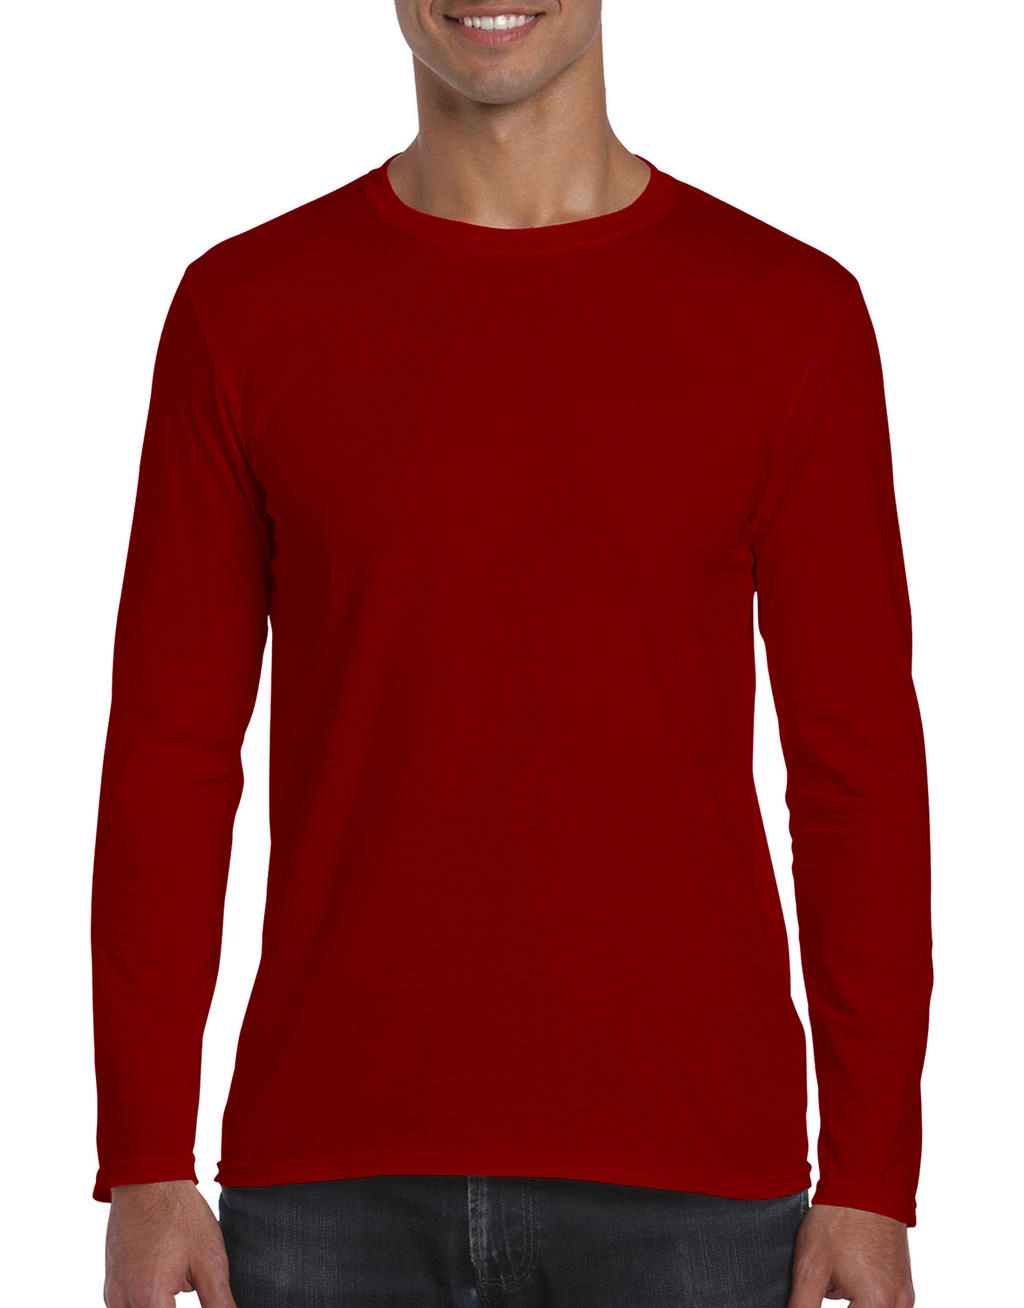 Softstyle® Long Sleeve Tee zum Besticken und Bedrucken in der Farbe Red mit Ihren Logo, Schriftzug oder Motiv.